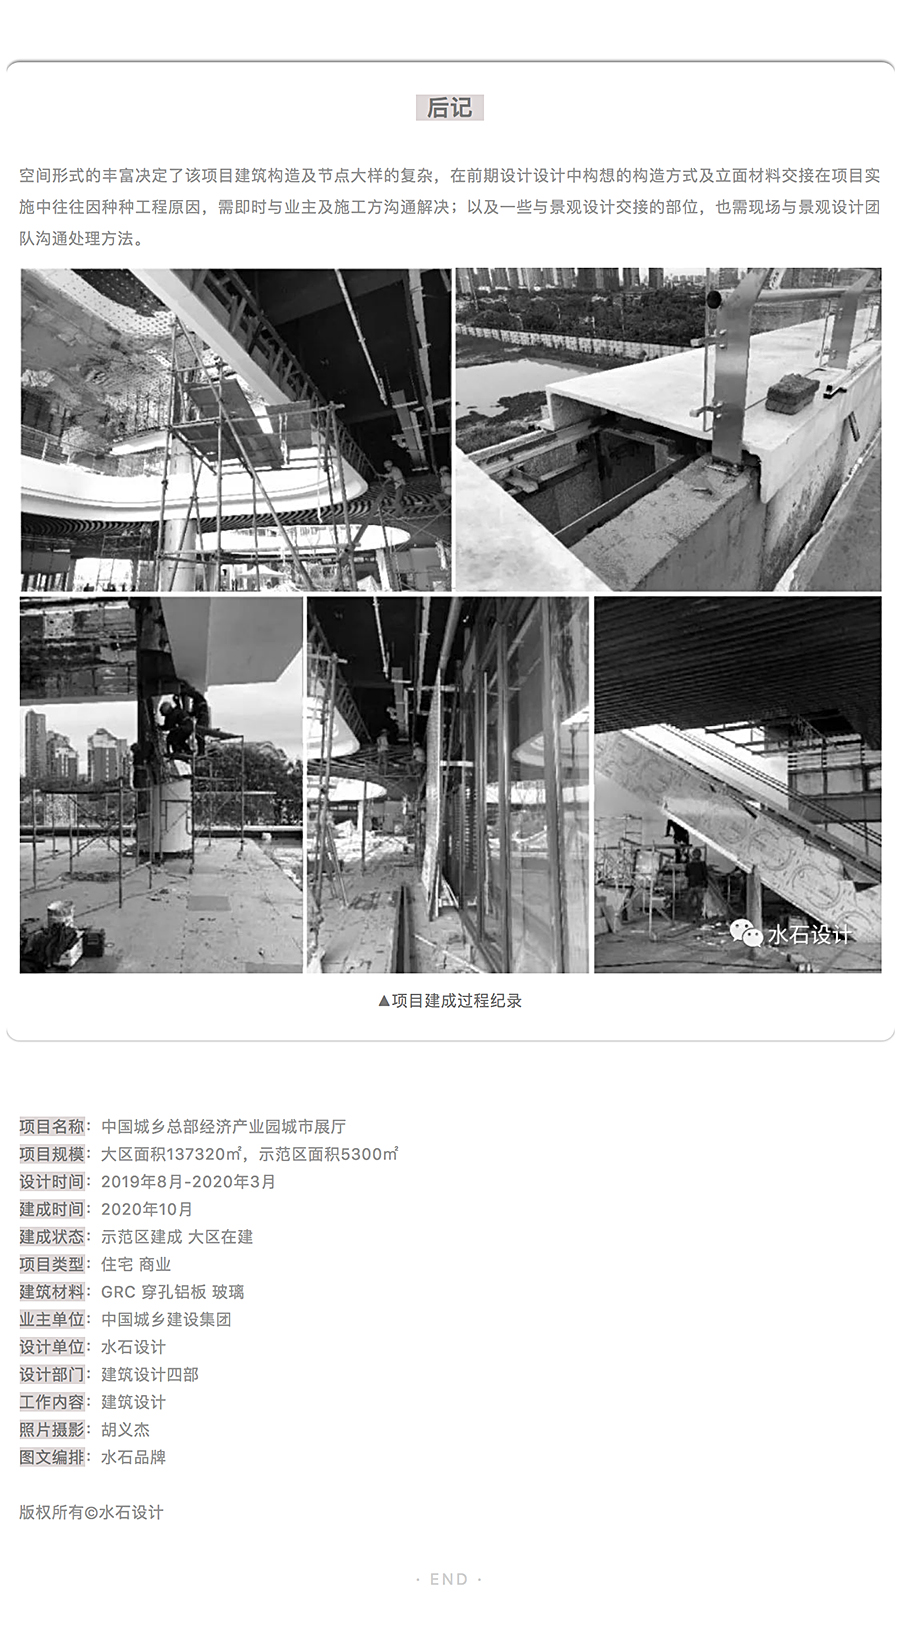 建构立体的城市社区公园-_-中国城乡总部经济产业园城市展厅_0015_图层-16.jpg